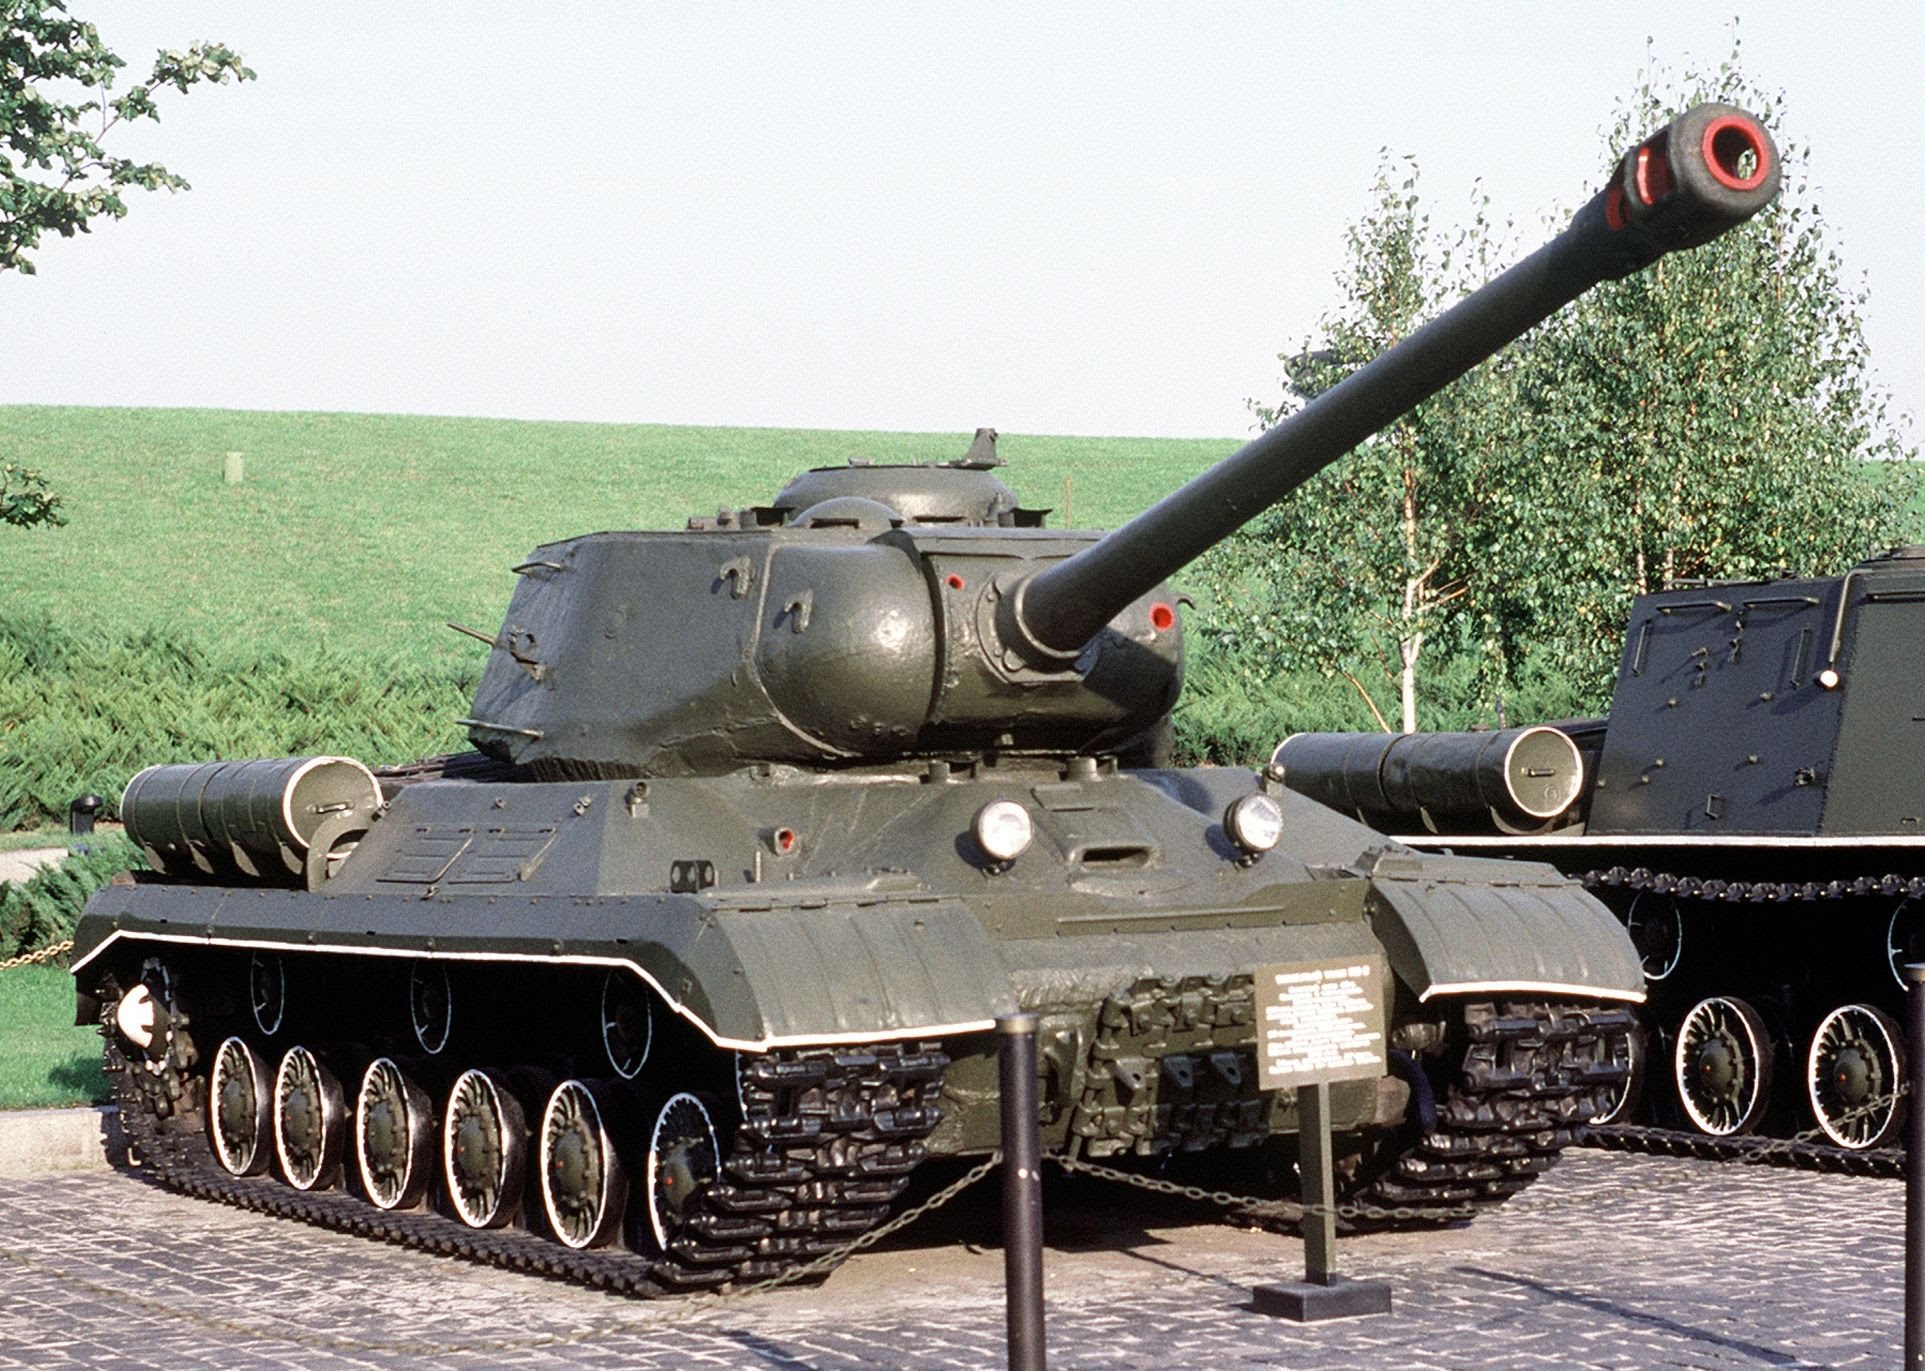 Фотки исы. Танк ИС-2. Танк Иосиф Сталин 2. Танк Иосиф Сталин. Советский тяжелый танк ИС-2 (Иосиф Сталин).